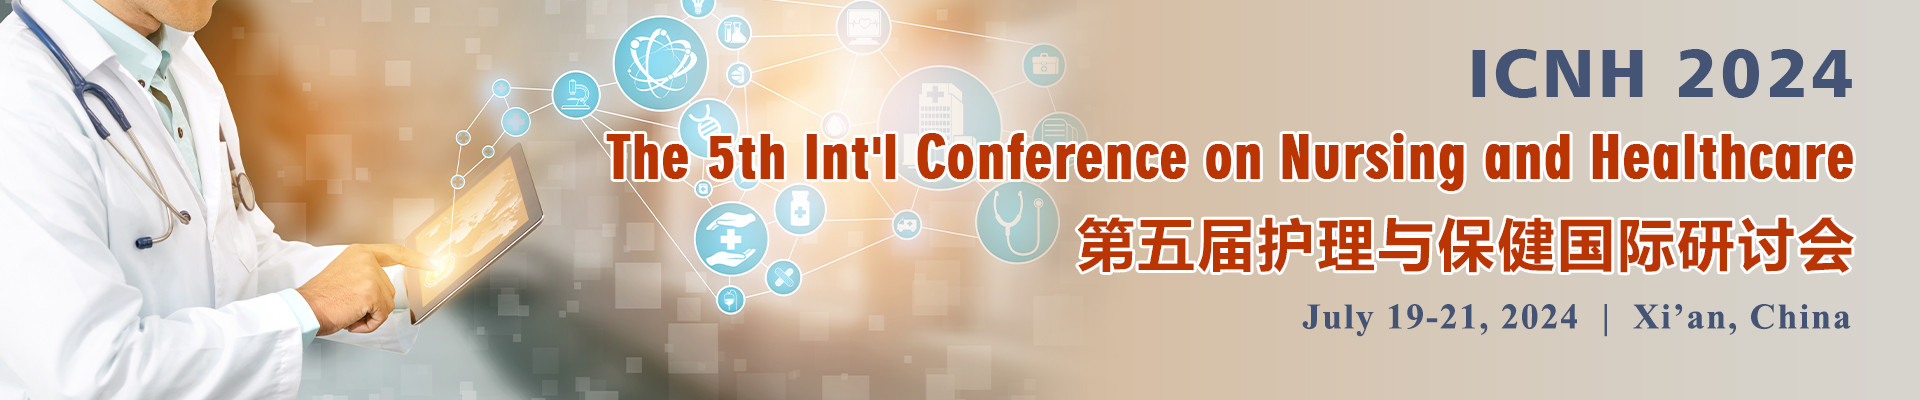 第五届护理与保健国际研讨会 (ICNH 2024) 